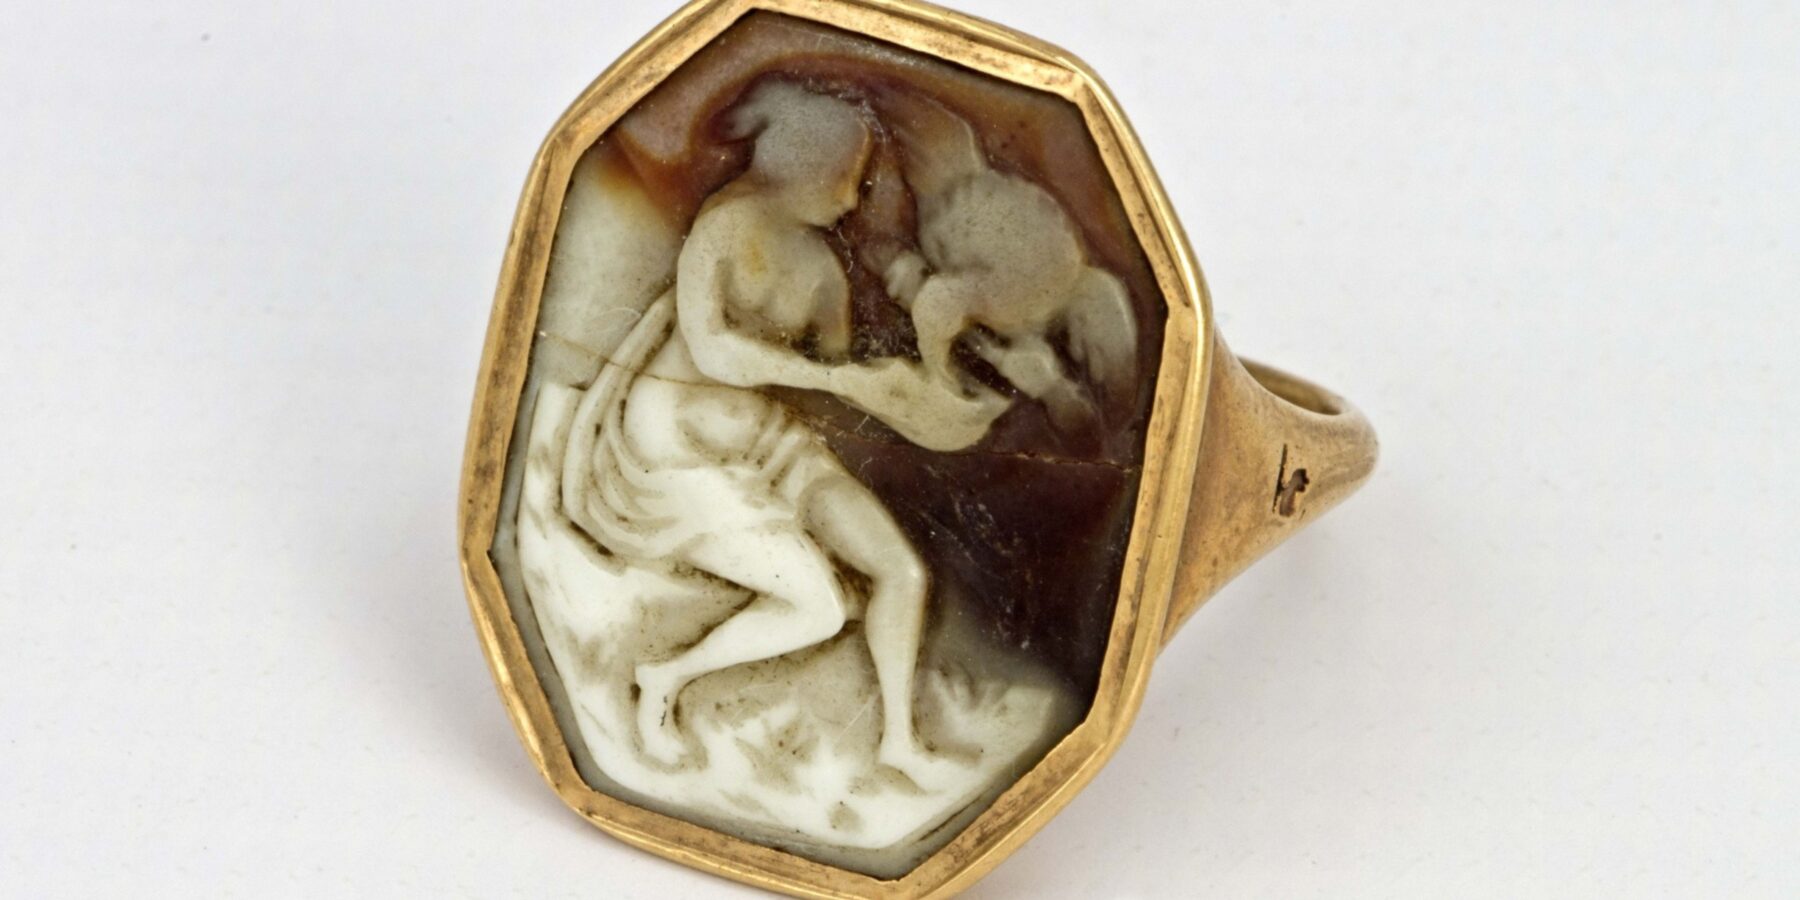 Українські науковці показали стародавній золотий перстень із зображенням богині молодості Геби, яка годує орла Зевса